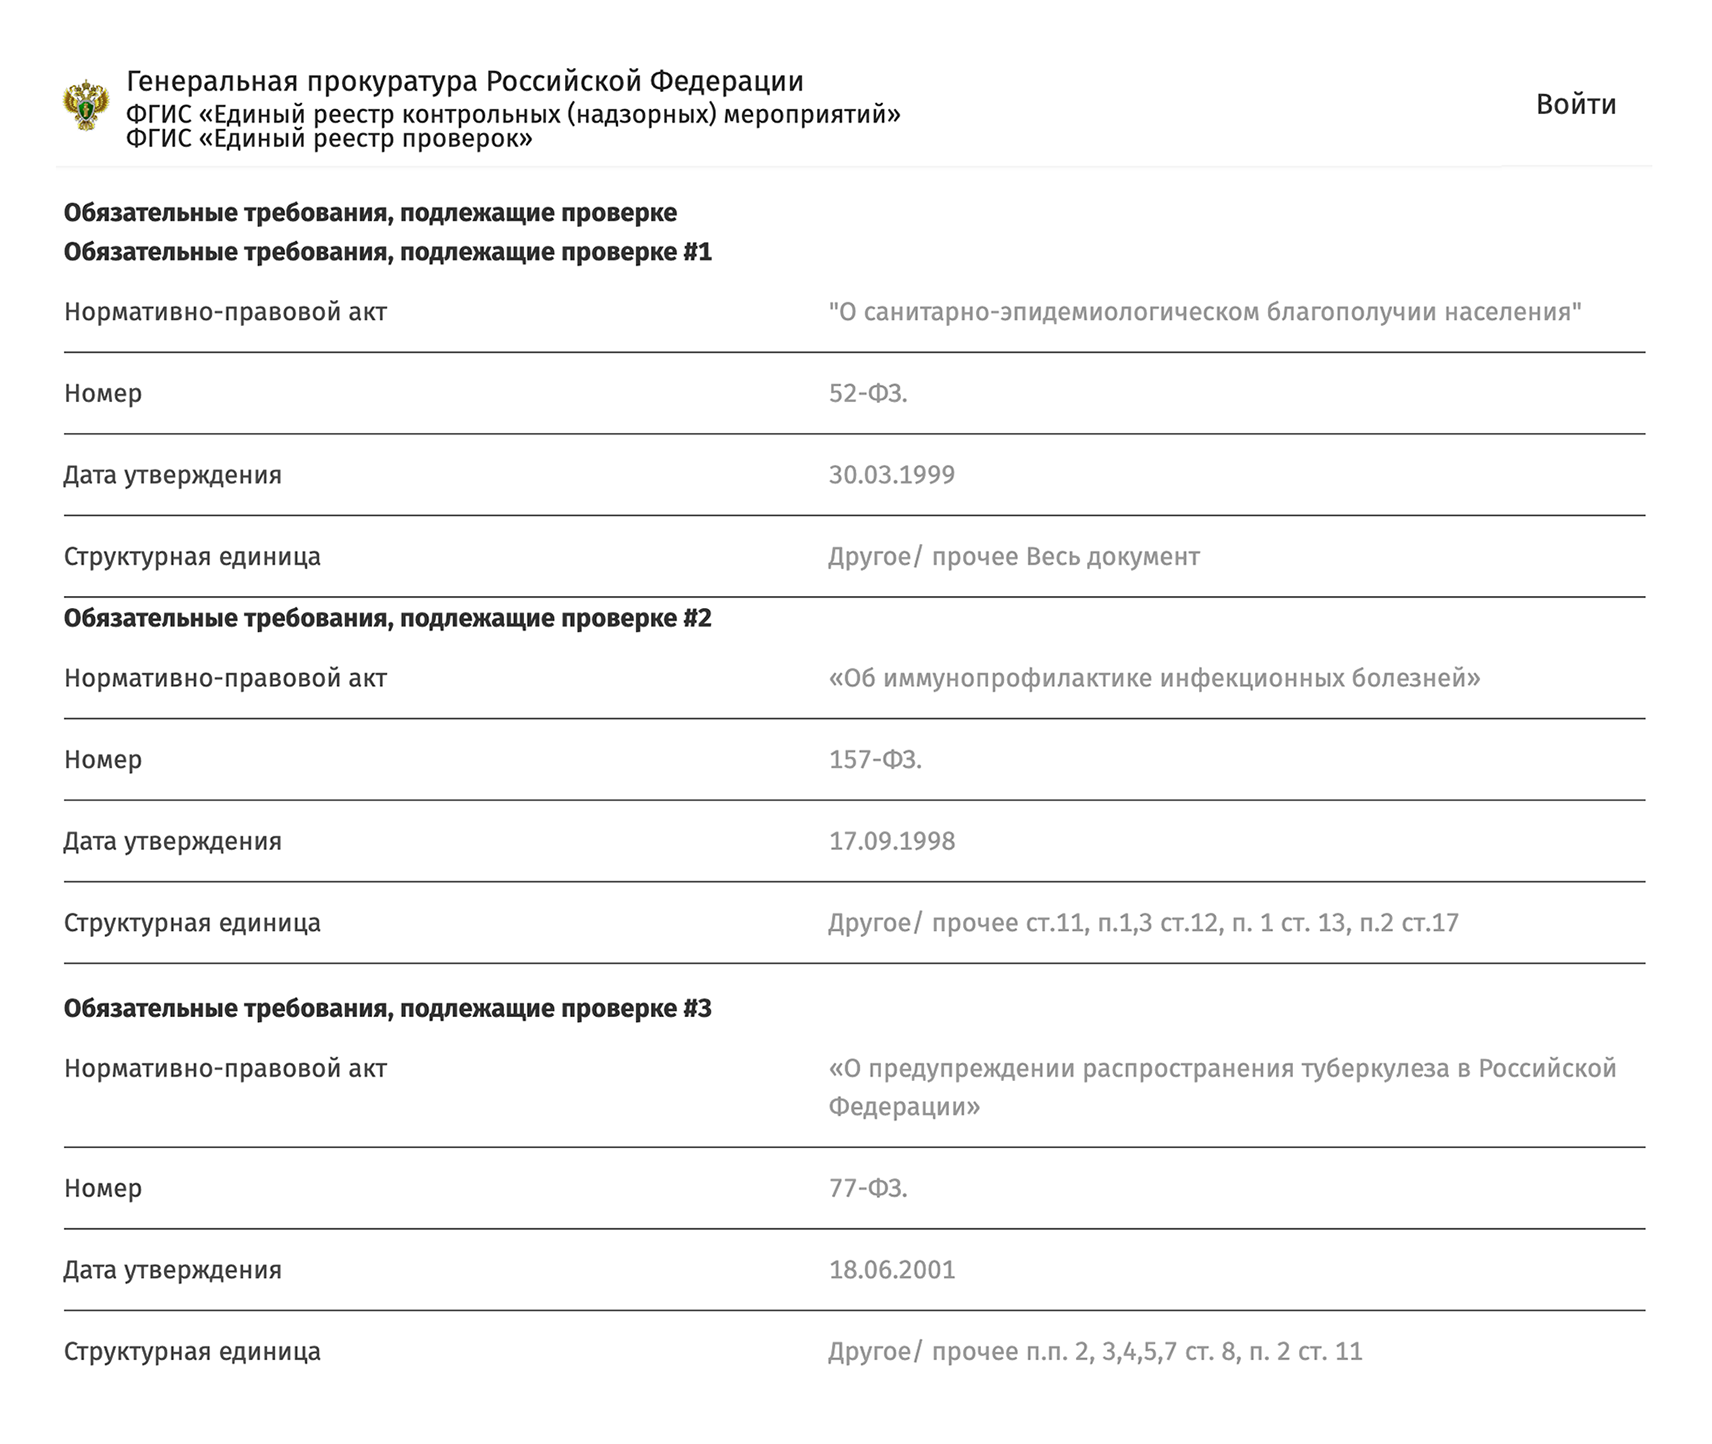 В сервисе прокуратуры больше данных о проверке, чем на сайте Роспотребнадзора. Например, можно посмотреть, на соответствие каким требованиям будут проверять бизнес. Источник: proverki.gov.ru